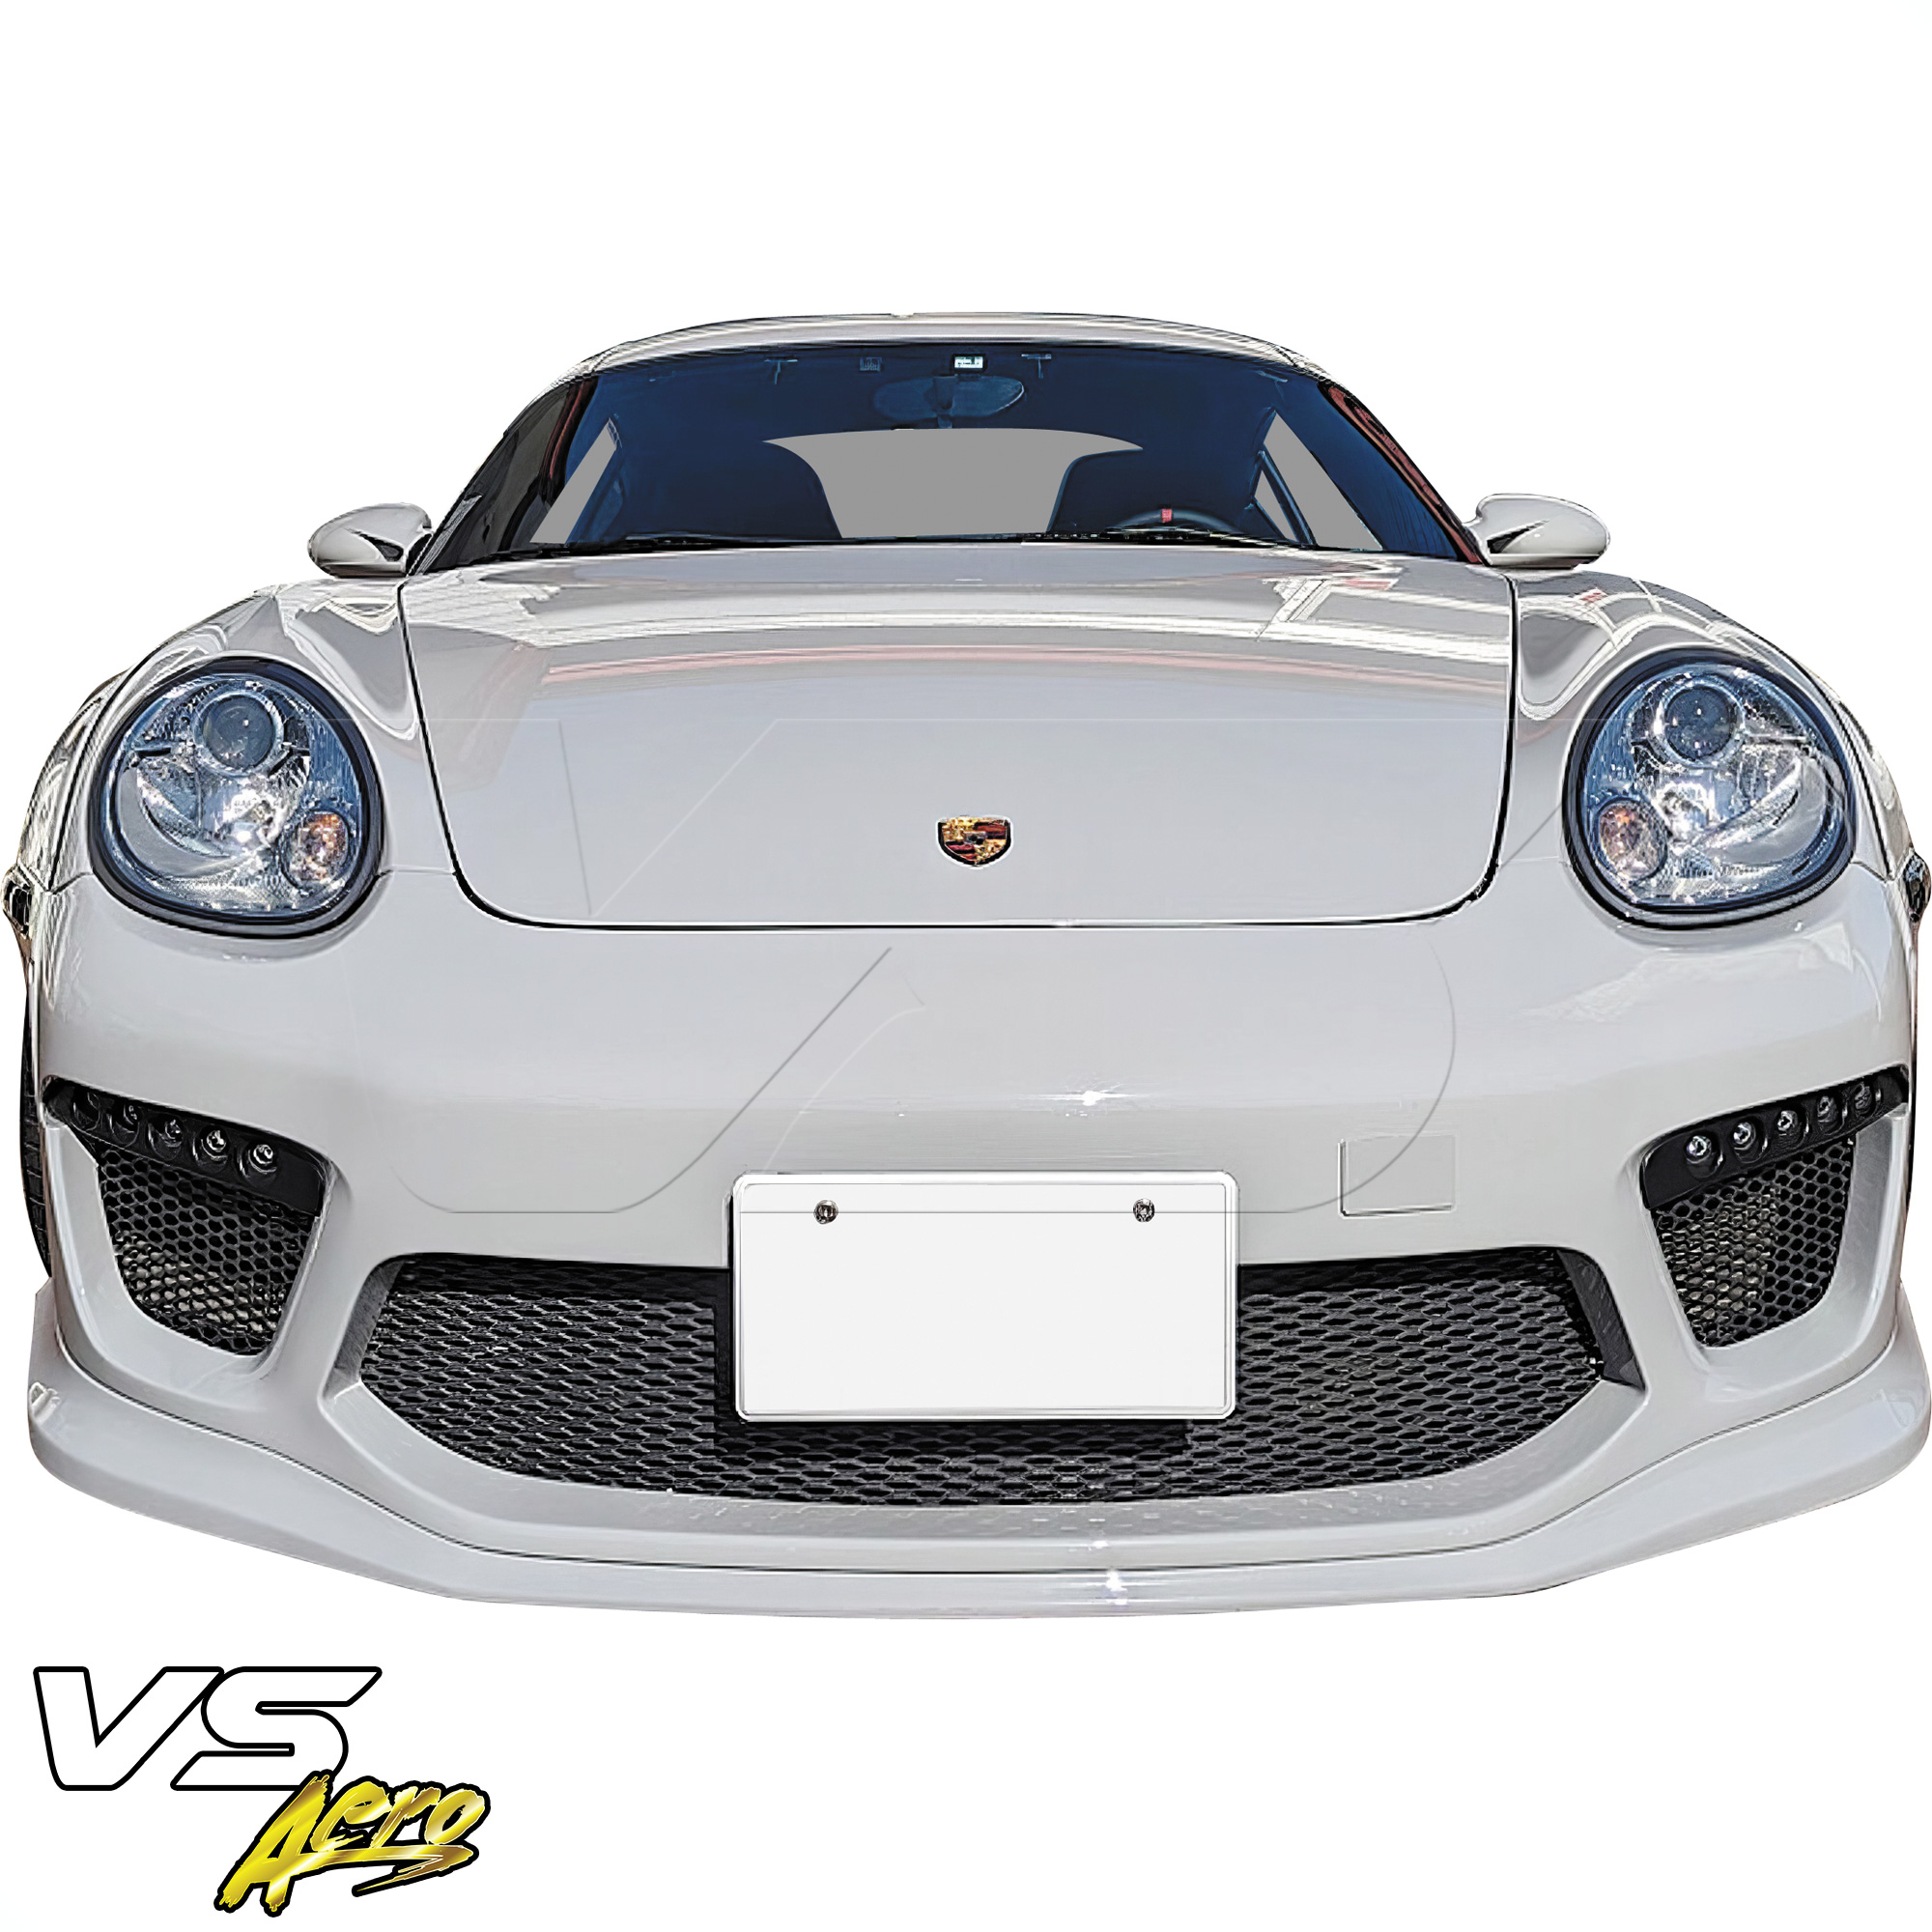 VSaero FRP TKYO v2 Wide Body Front Bumper 3pc > Porsche Cayman 987 2006-2008 - Image 13